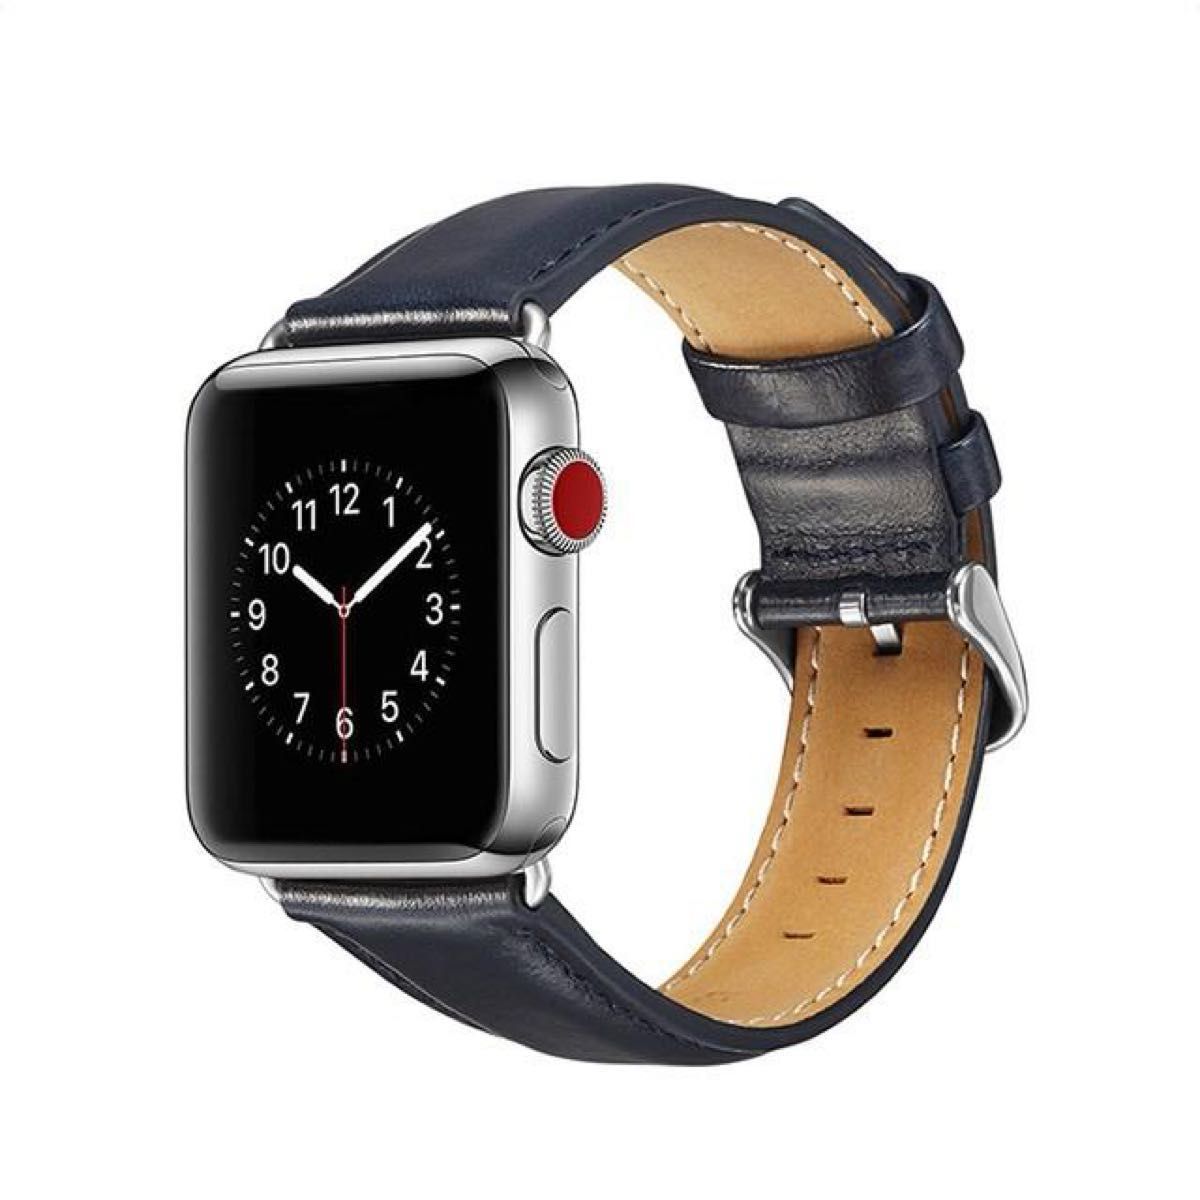 AppleWatch バンド レザー アップルウォッチ 交換 ベルト 42mm レザーベルト Apple Watch 時計バンド